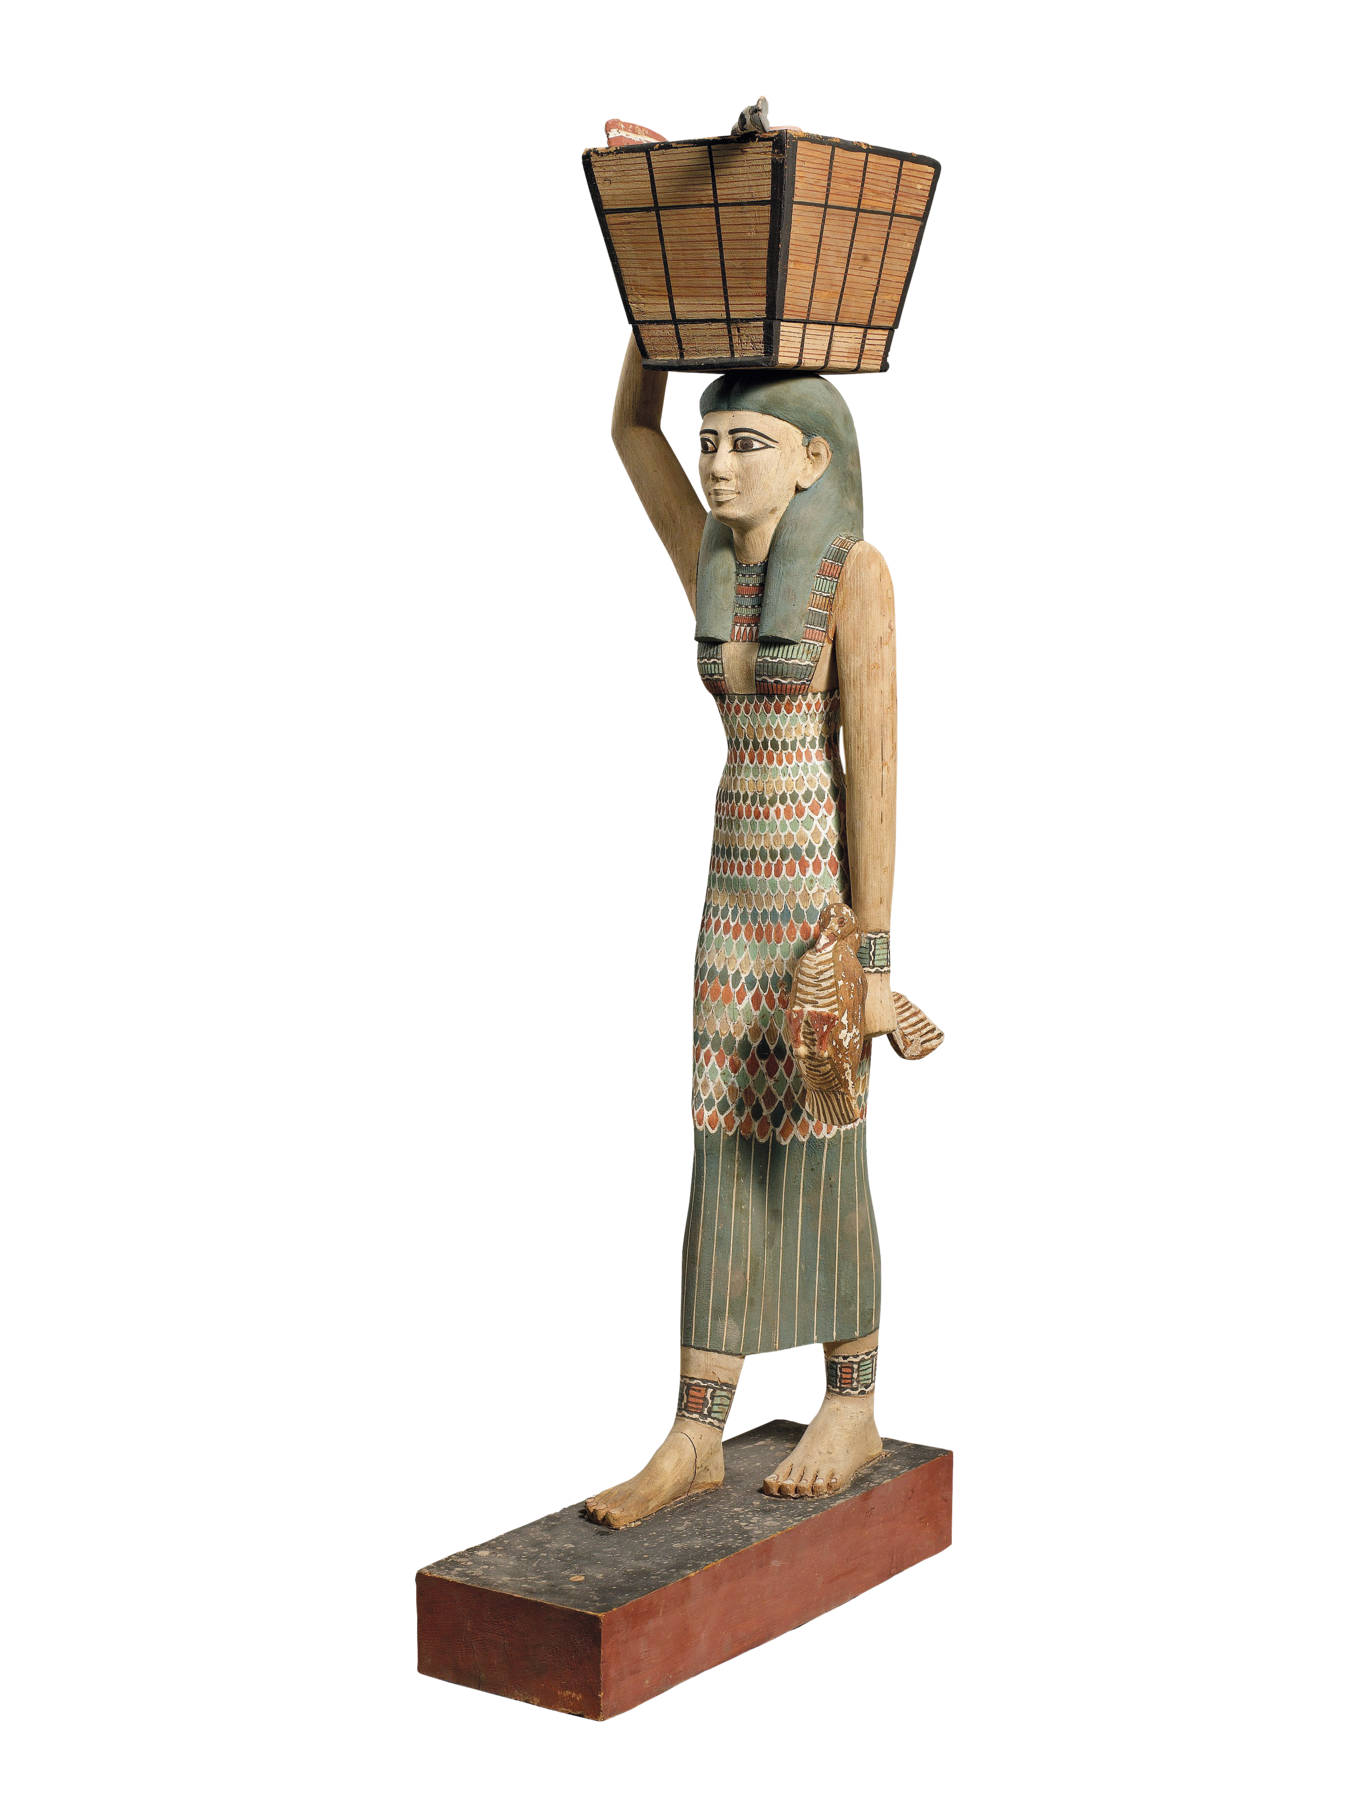 Estátua. Mulher egípcia, com longos cabelos escuros e lisos, usando um longo vestido colorido. Ela segura uma cesta com uma das mãos, apoiada em sua cabeça.